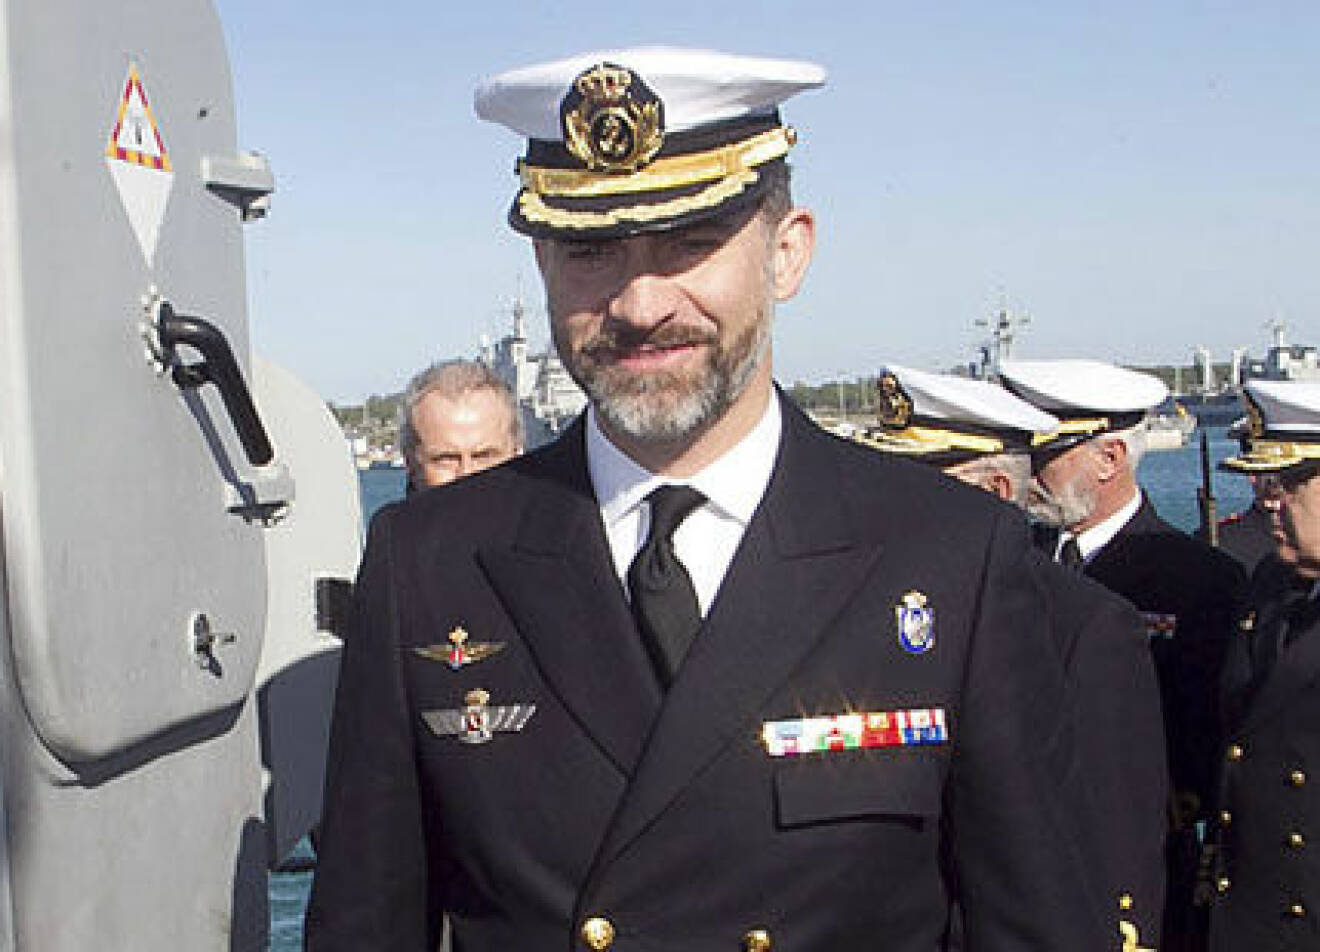 Kronprins Felipe i officersmundering ombord på båt